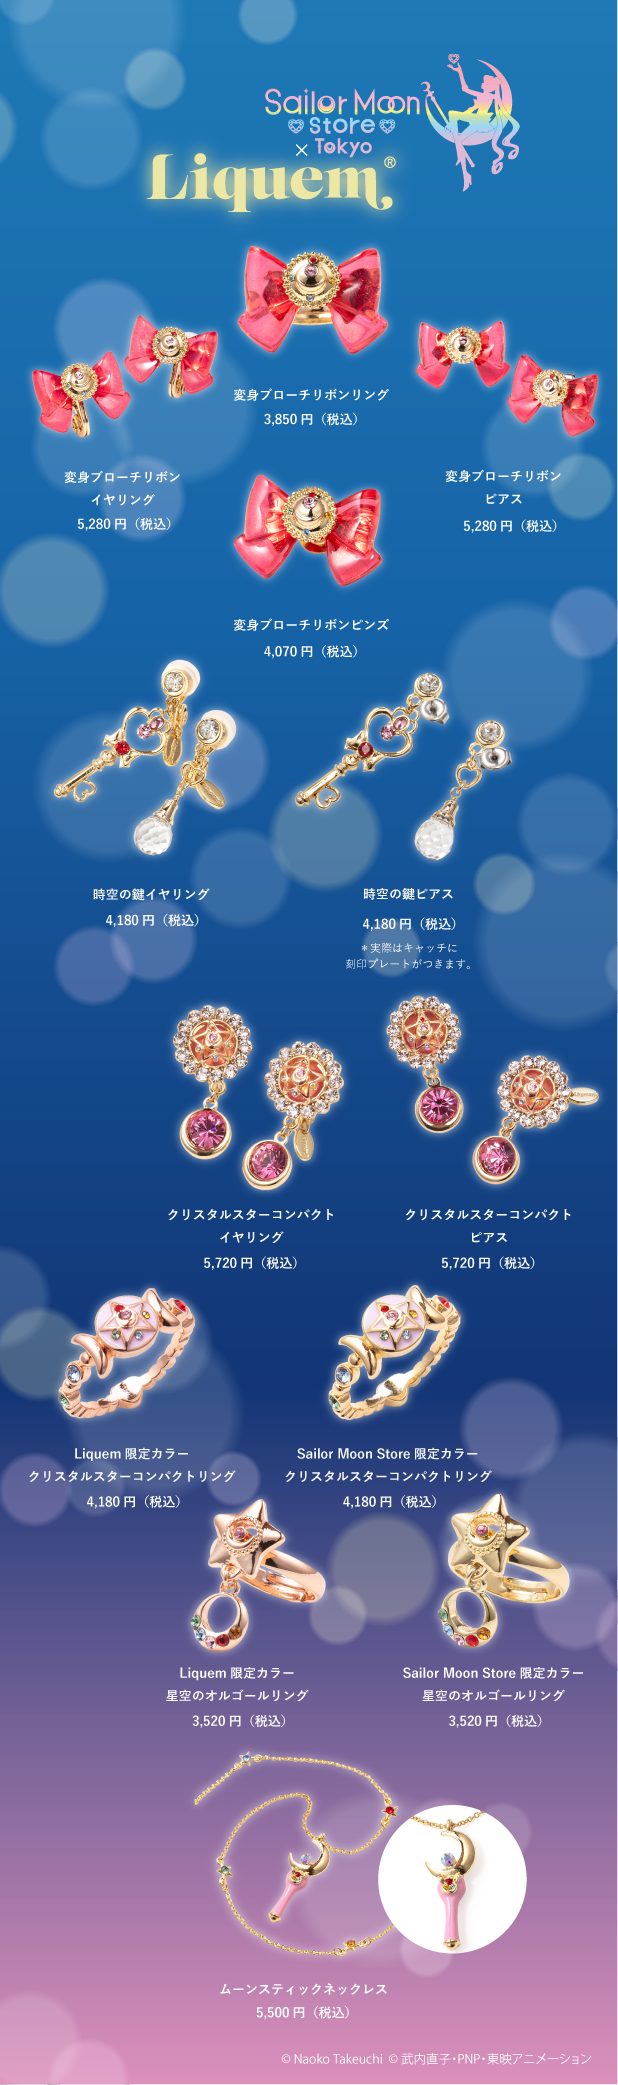 A Sailor Moon Store lançou uma colaboração com a Liquem, trazendo joias inspiradas na icônica franquia Sailor Moon dos anos 90.